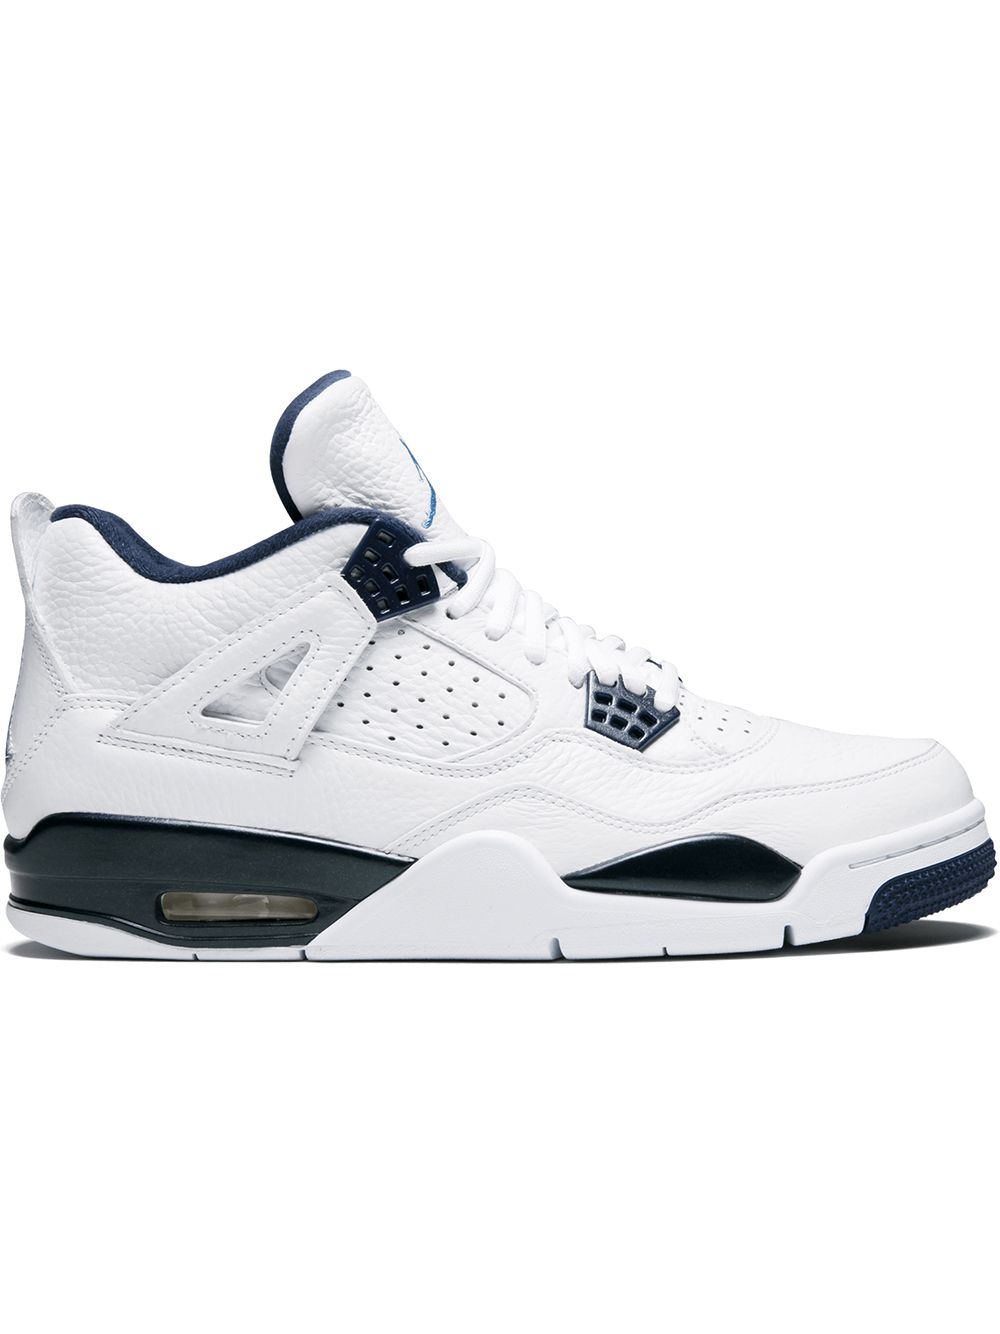 Jordan Air Jordan 4 Retro LS "Legend Blue" sneakers - White